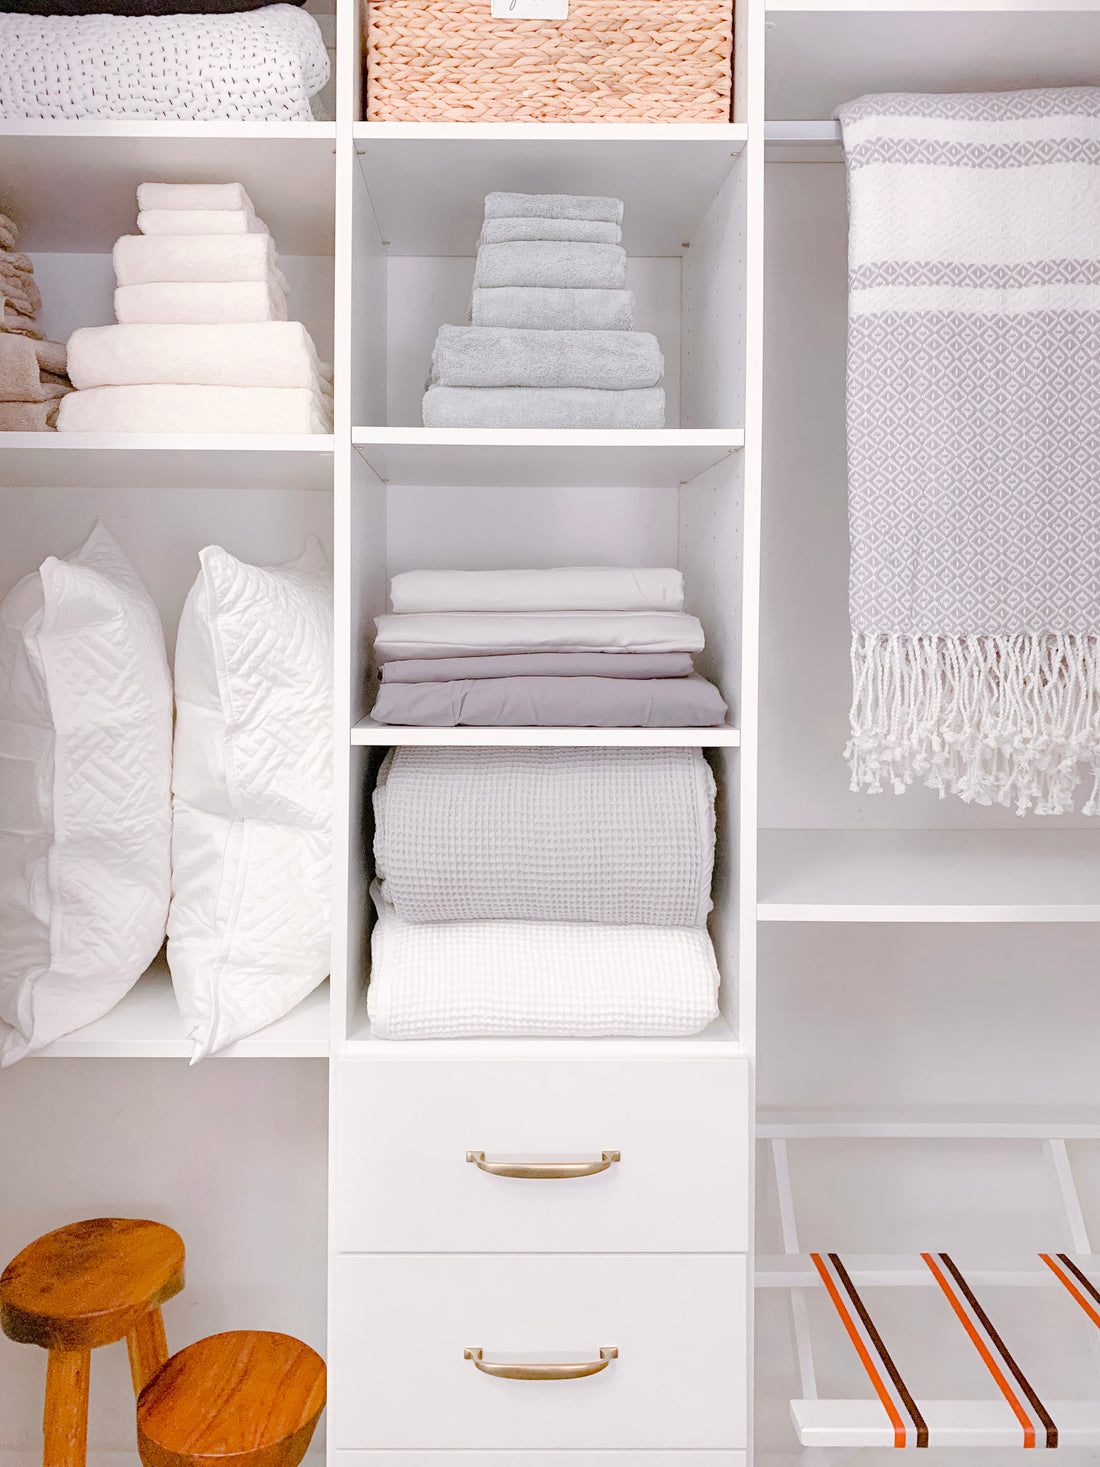 organizing linen closet: hamper, drawers, totes, hanging rack